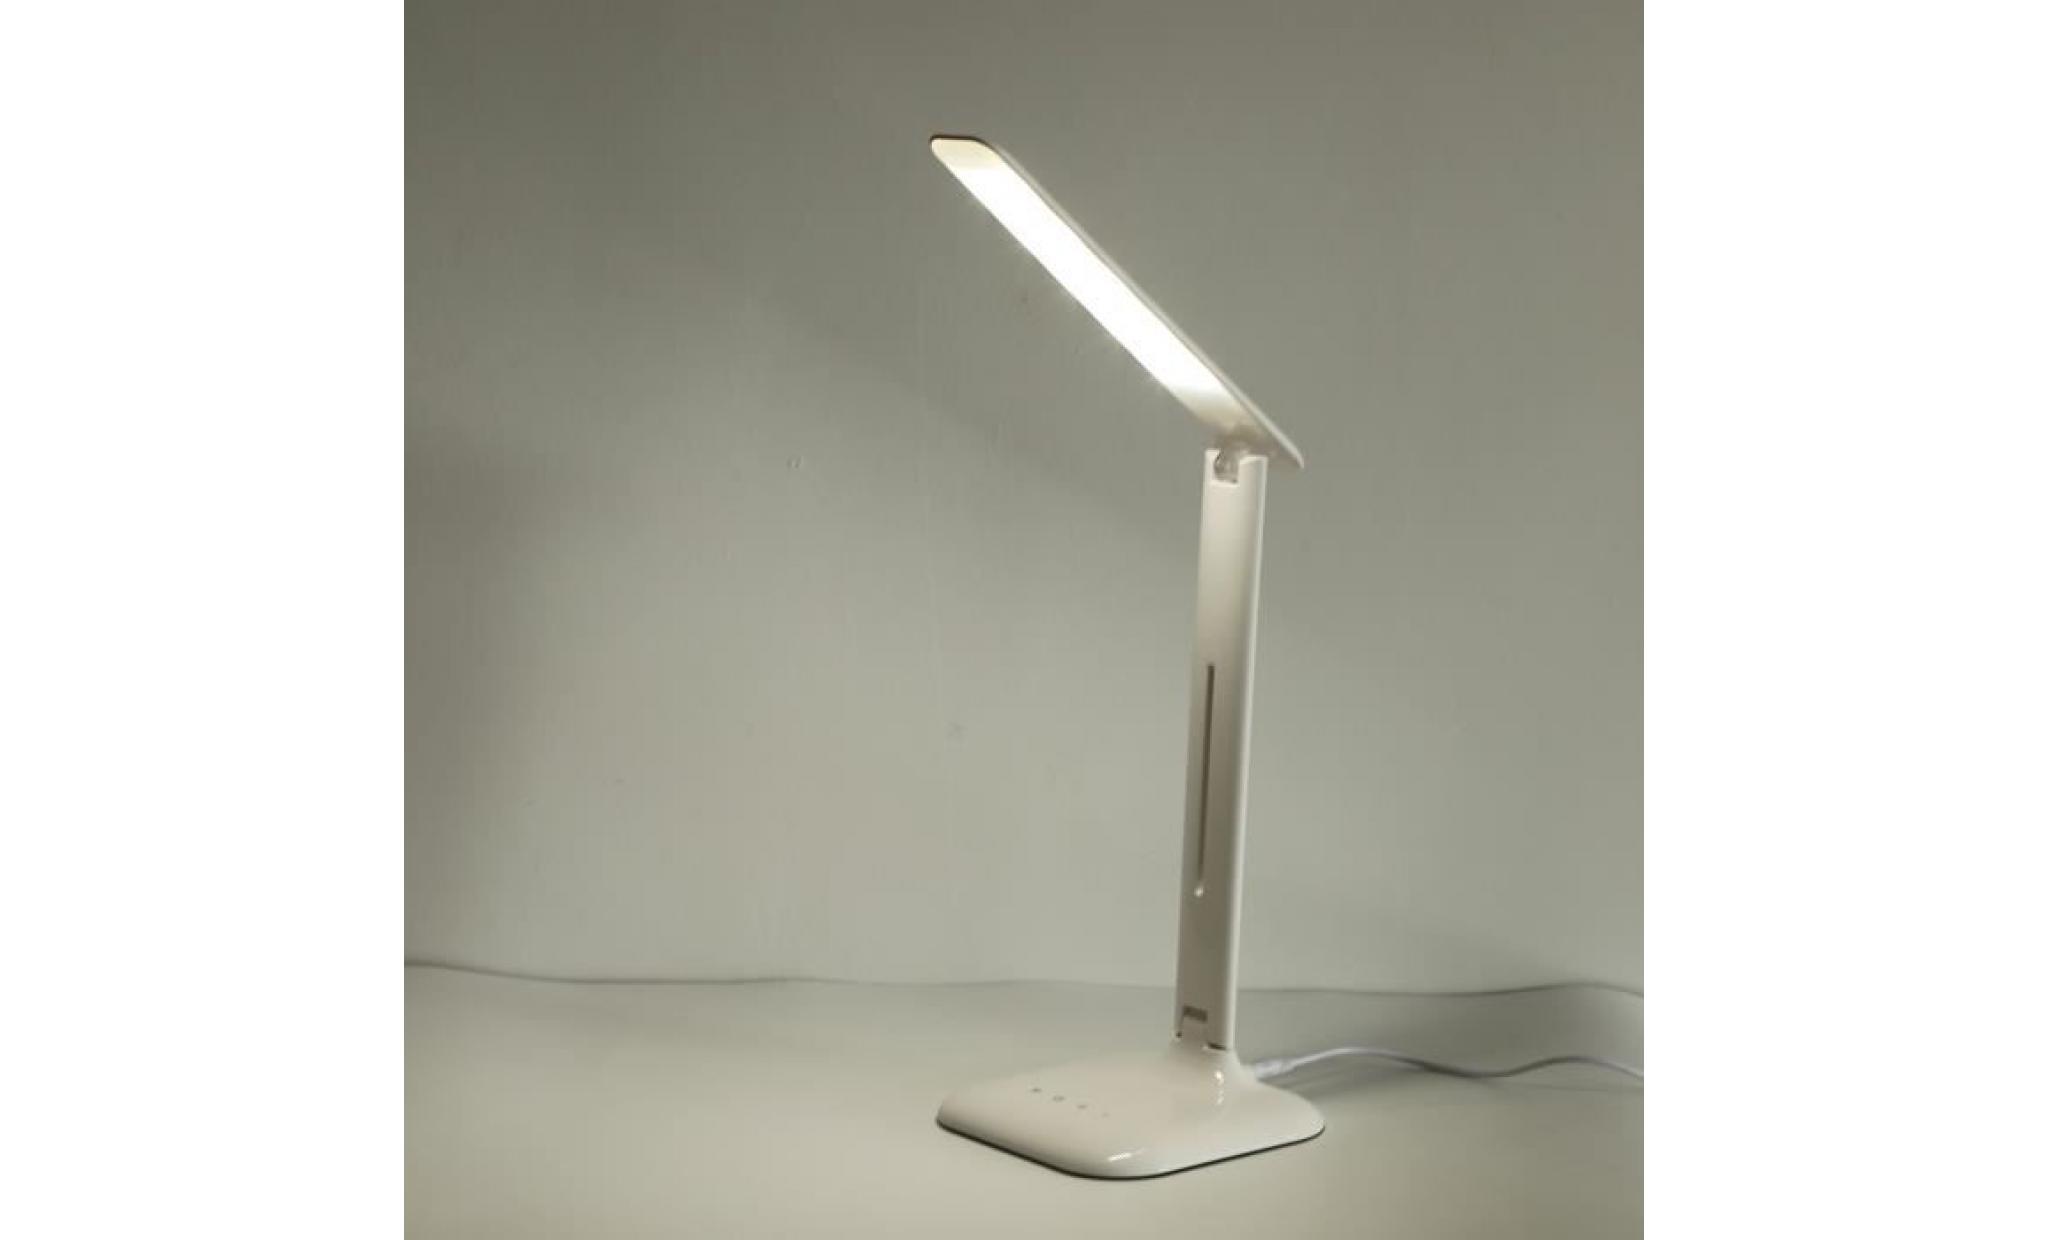 lampe de bureau lampe de table lampe de chevet led 7w,4 modes (étude, lecteure, sommeil, relax), 7w 600lm + adaptateur pas cher